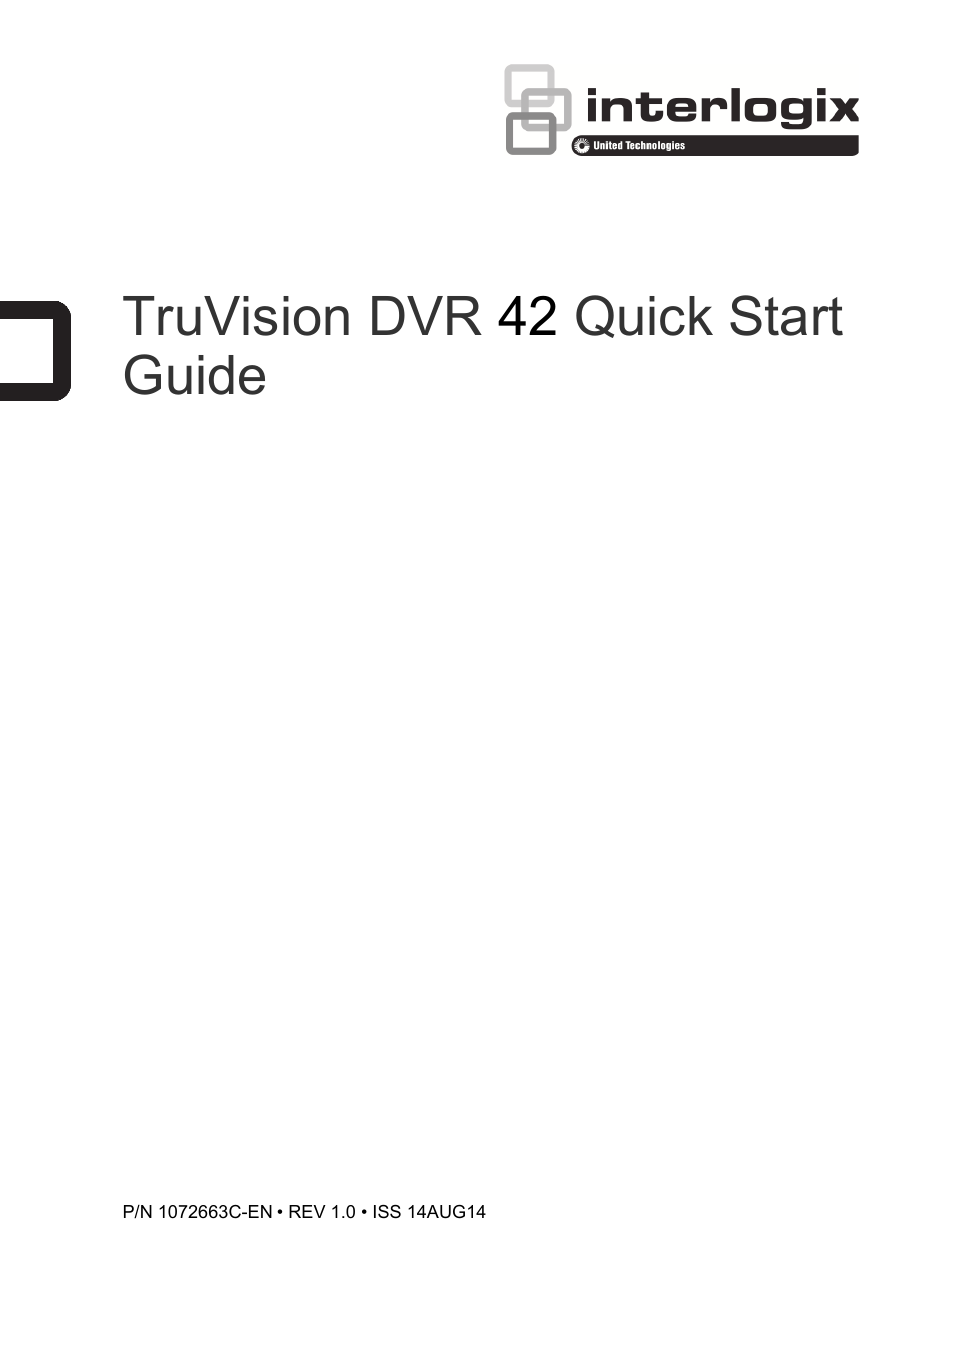 DVR 42 Quick Start